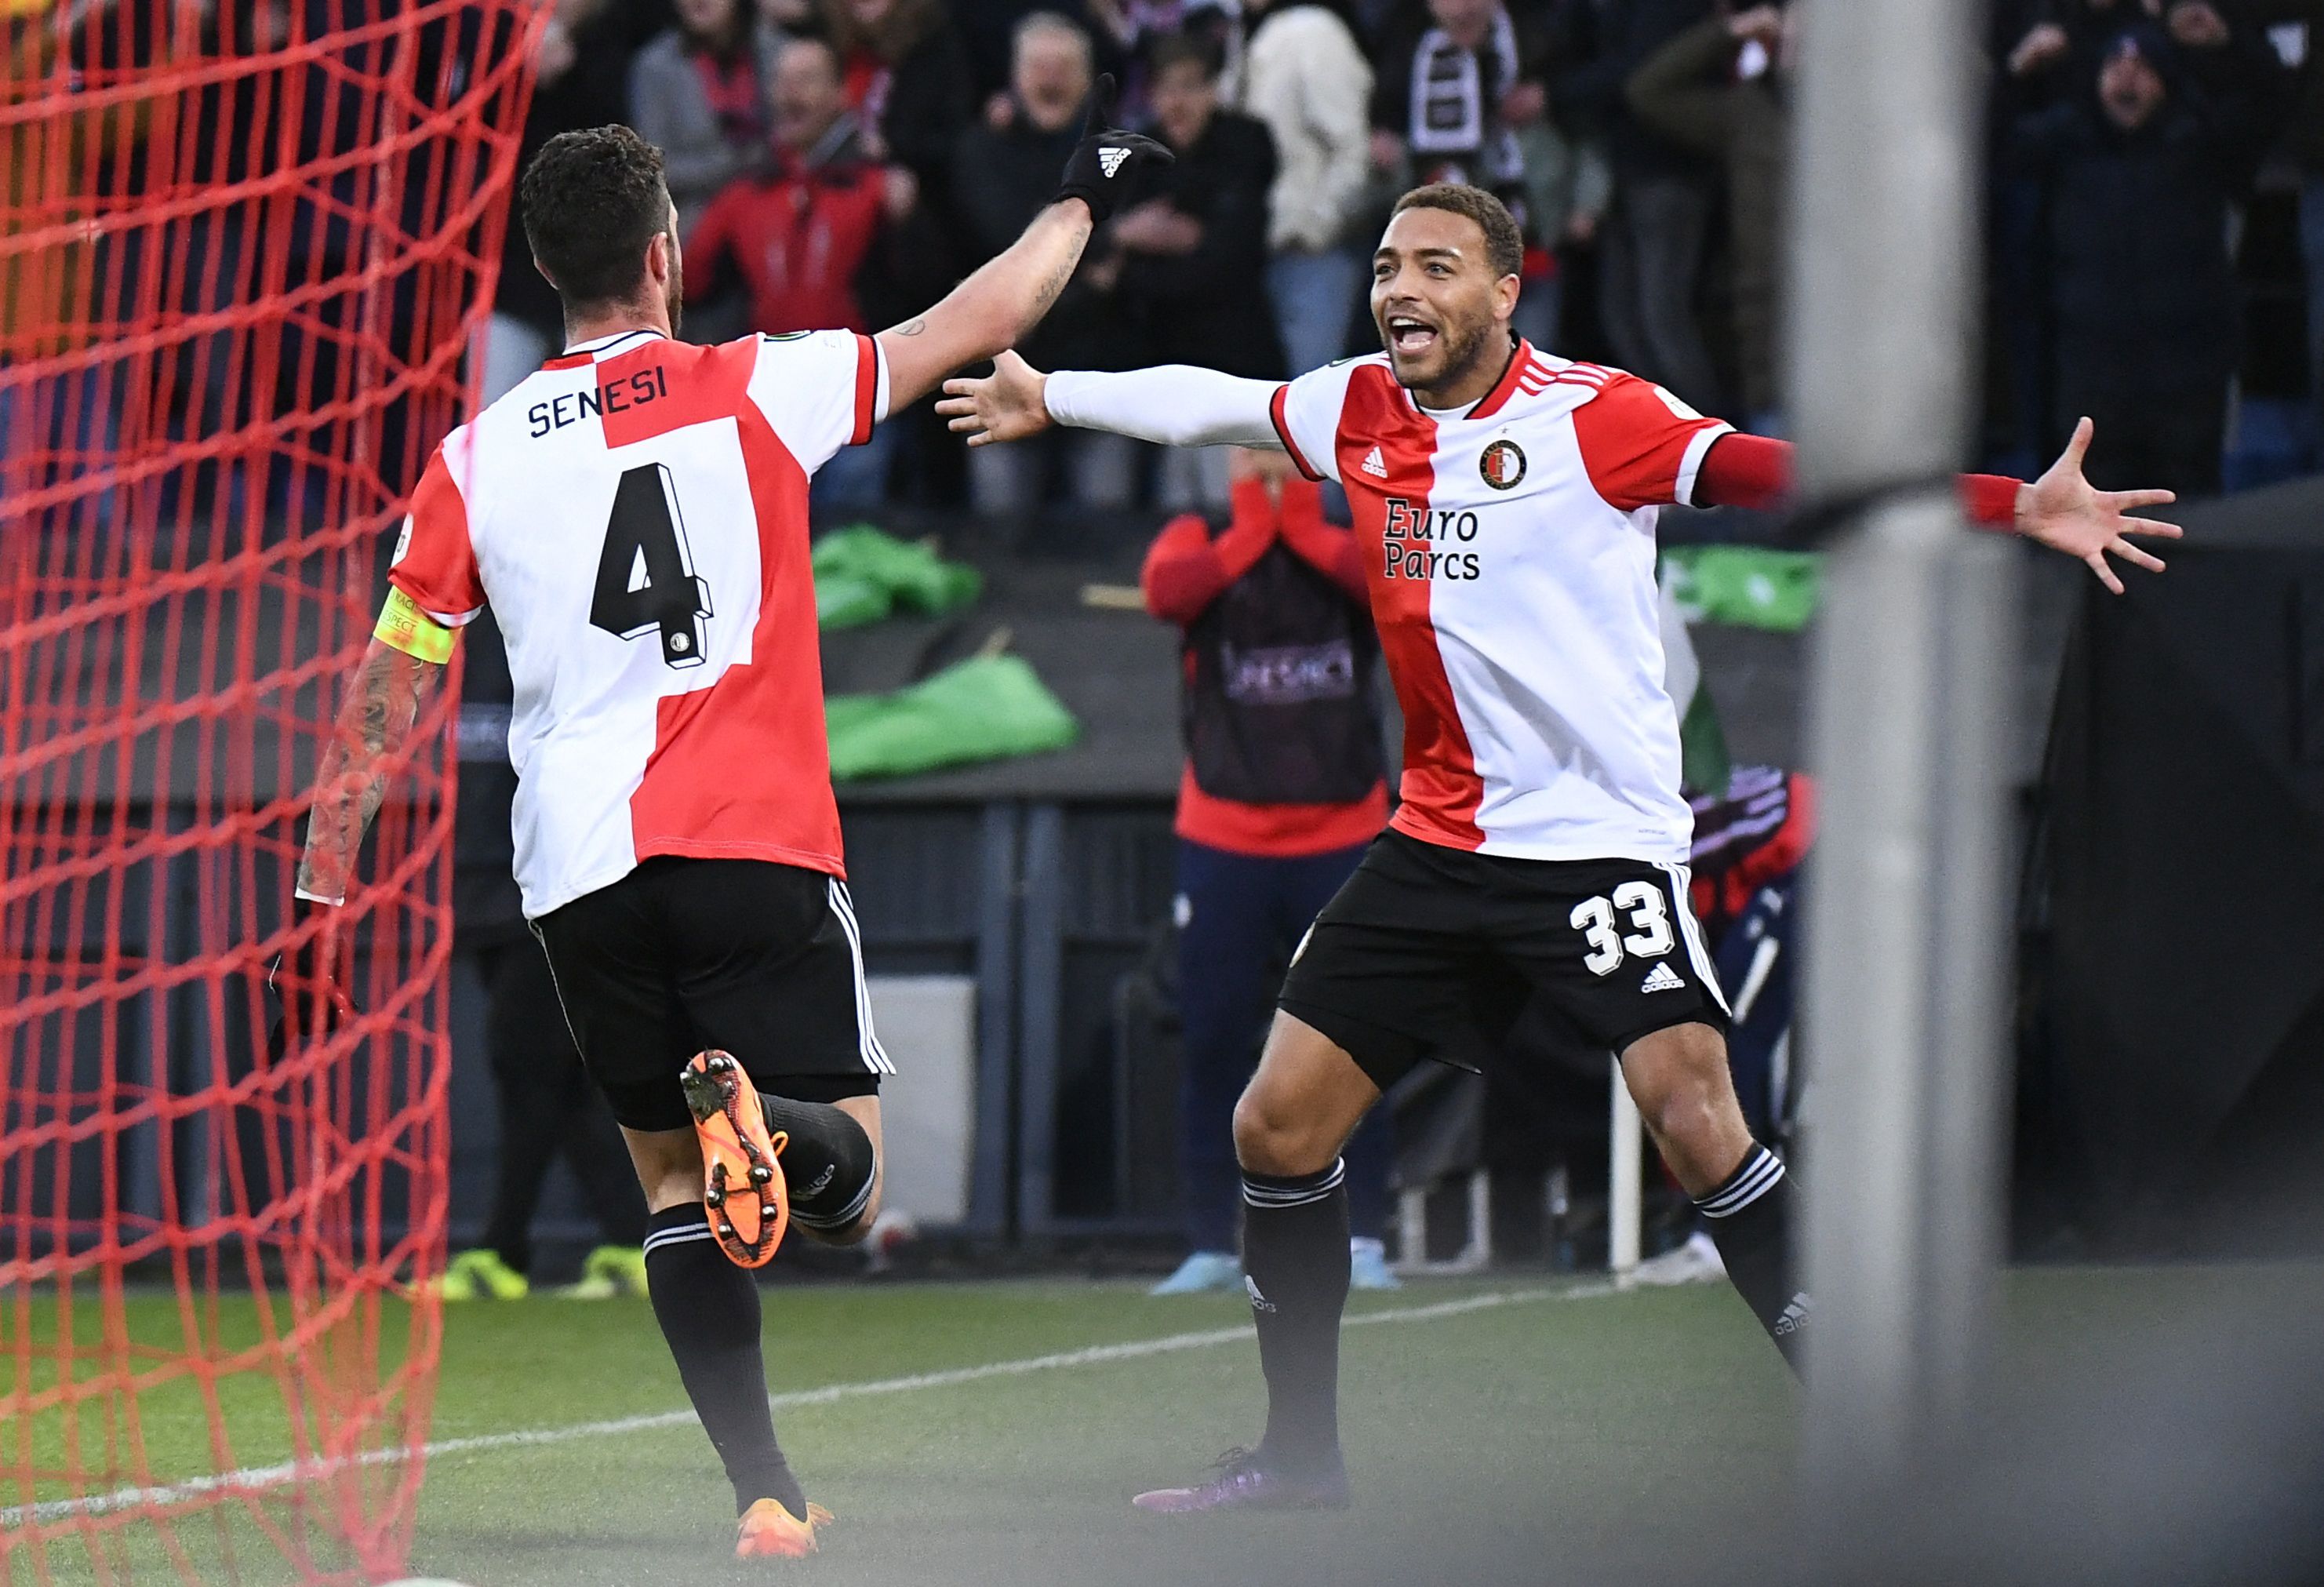 Senesi se ha ganado la cinta de capitán en Feyenoord (Reuters)